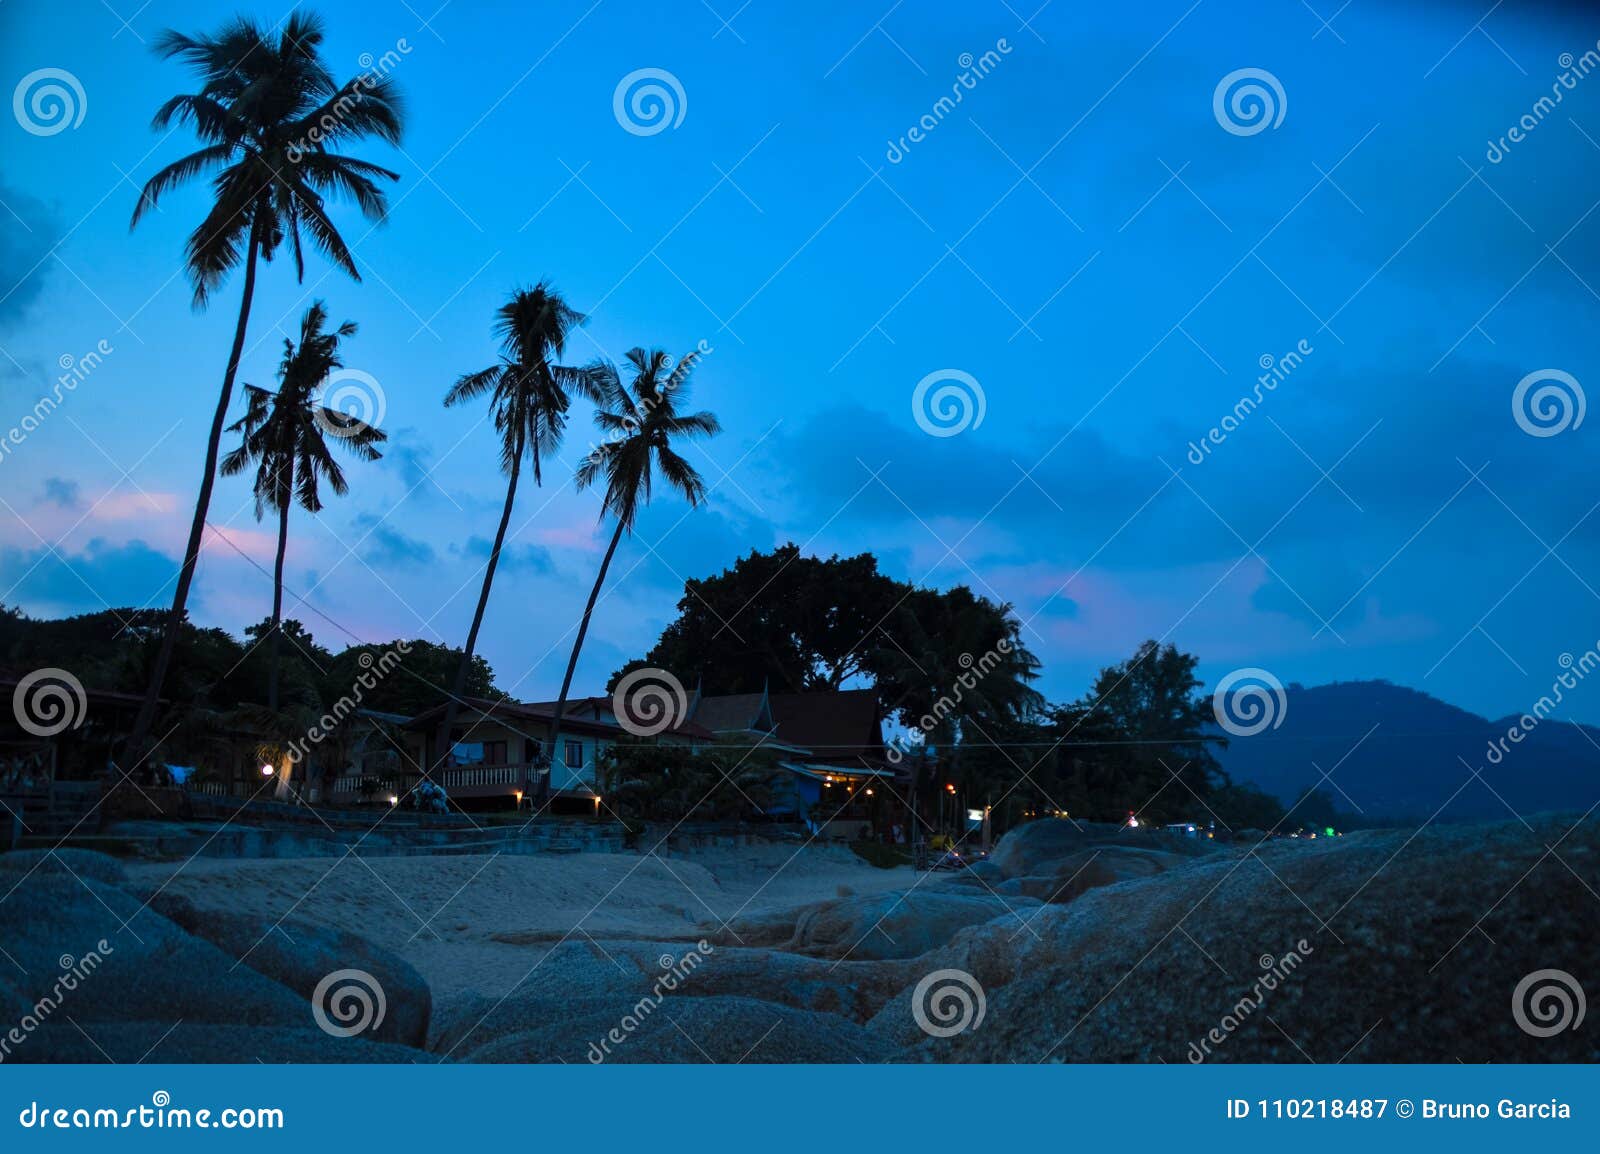 beach in koh phangan